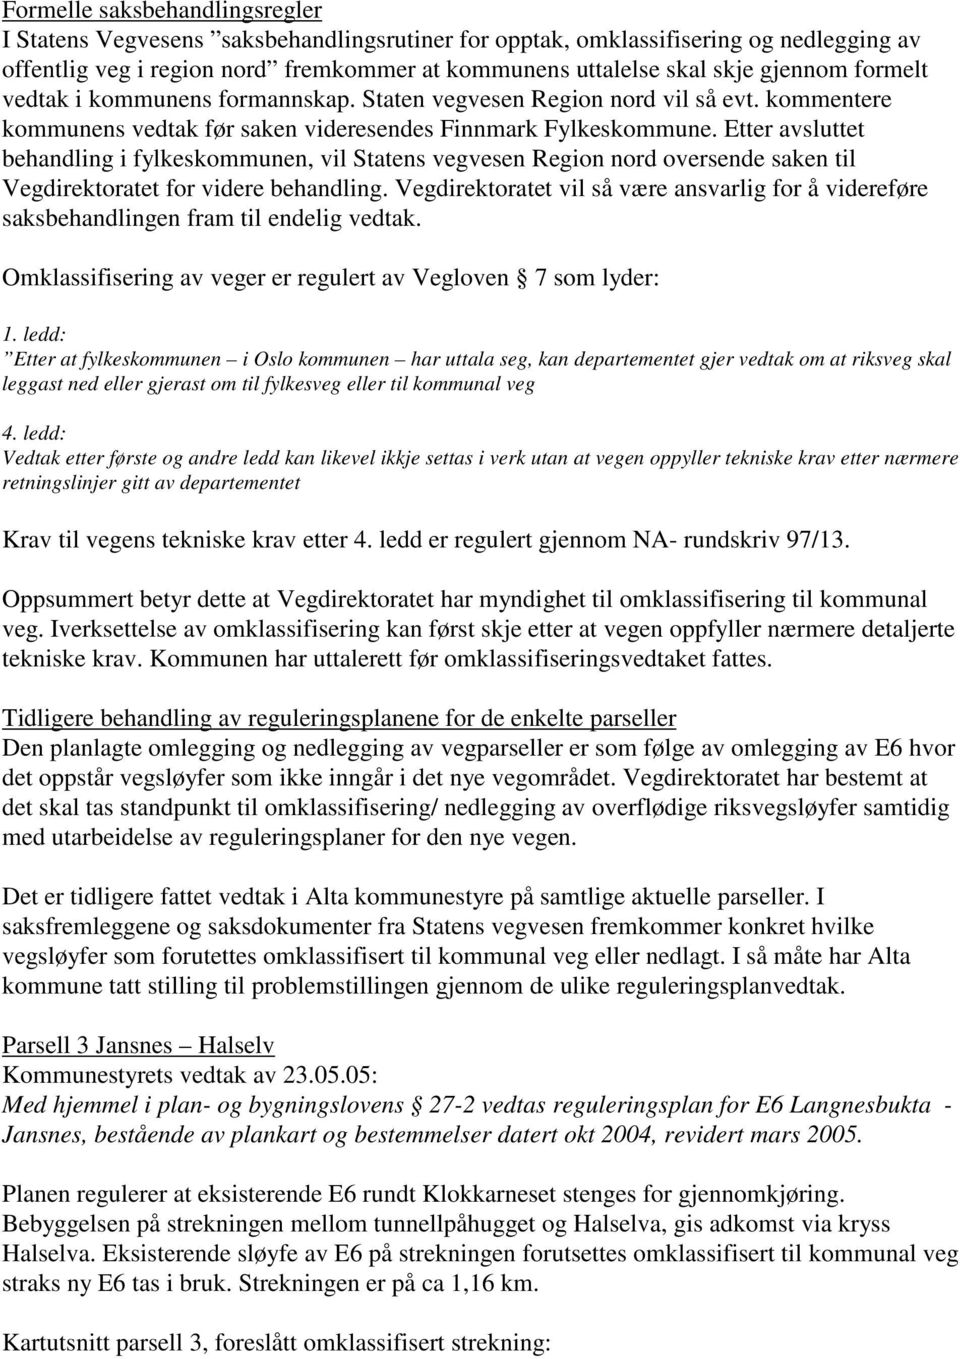 Etter avsluttet behandling i fylkeskommunen, vil Statens vegvesen Region nord oversende saken til Vegdirektoratet for videre behandling.